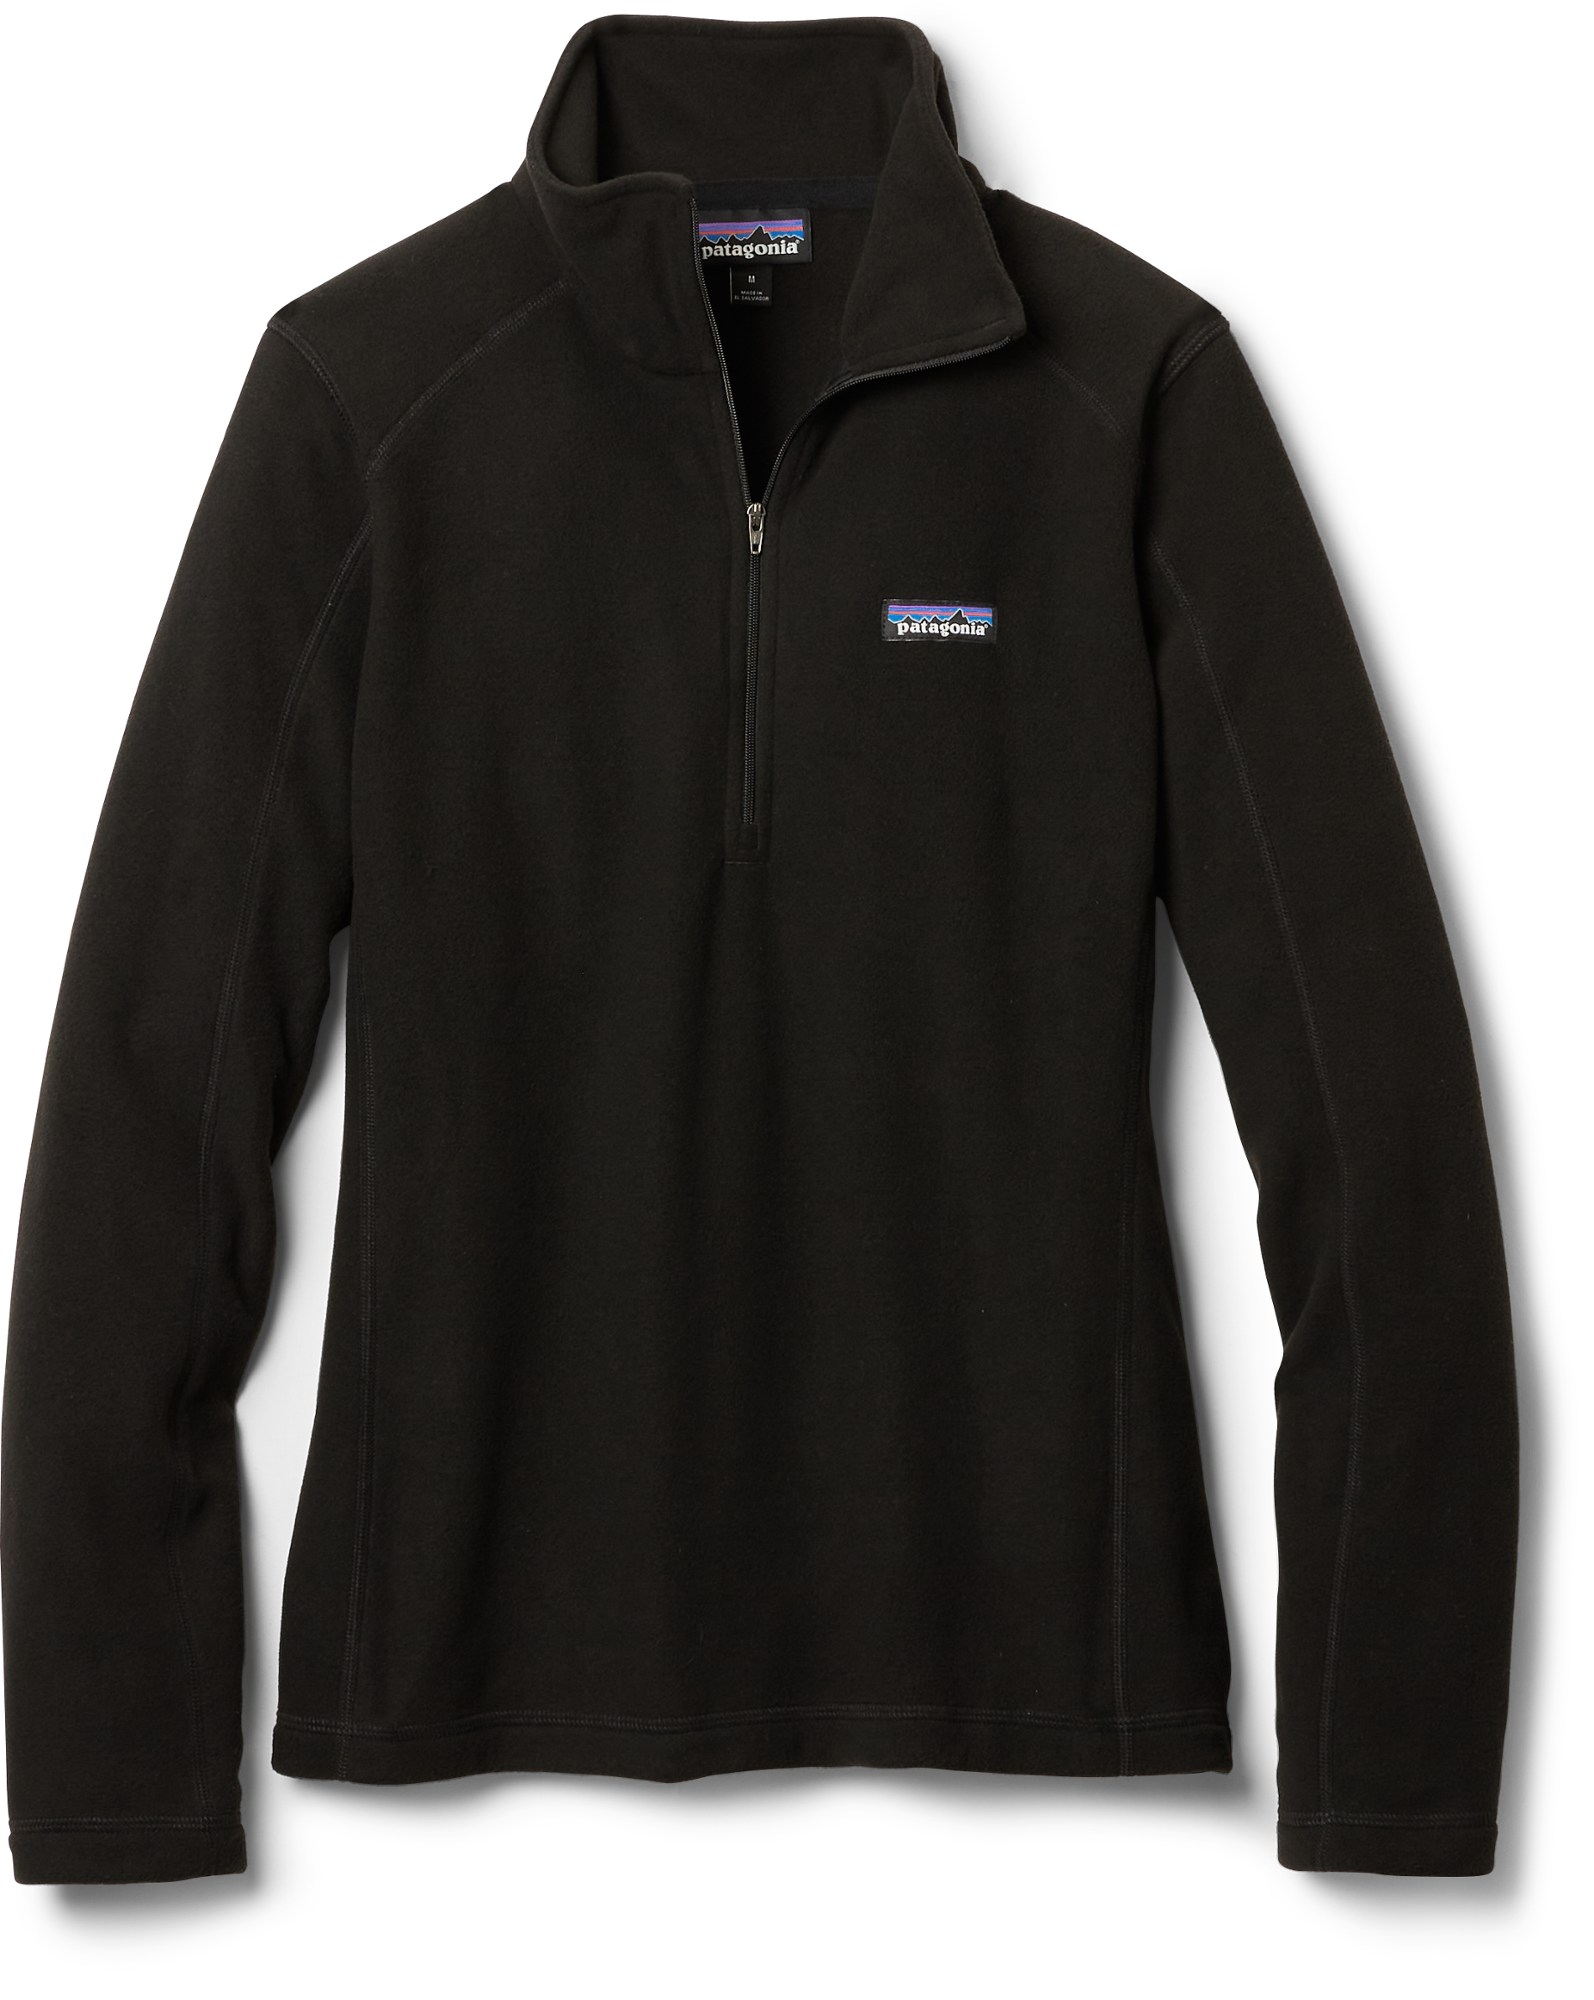 Флисовый пуловер с молнией в четверть размера Micro D — женский Patagonia, черный